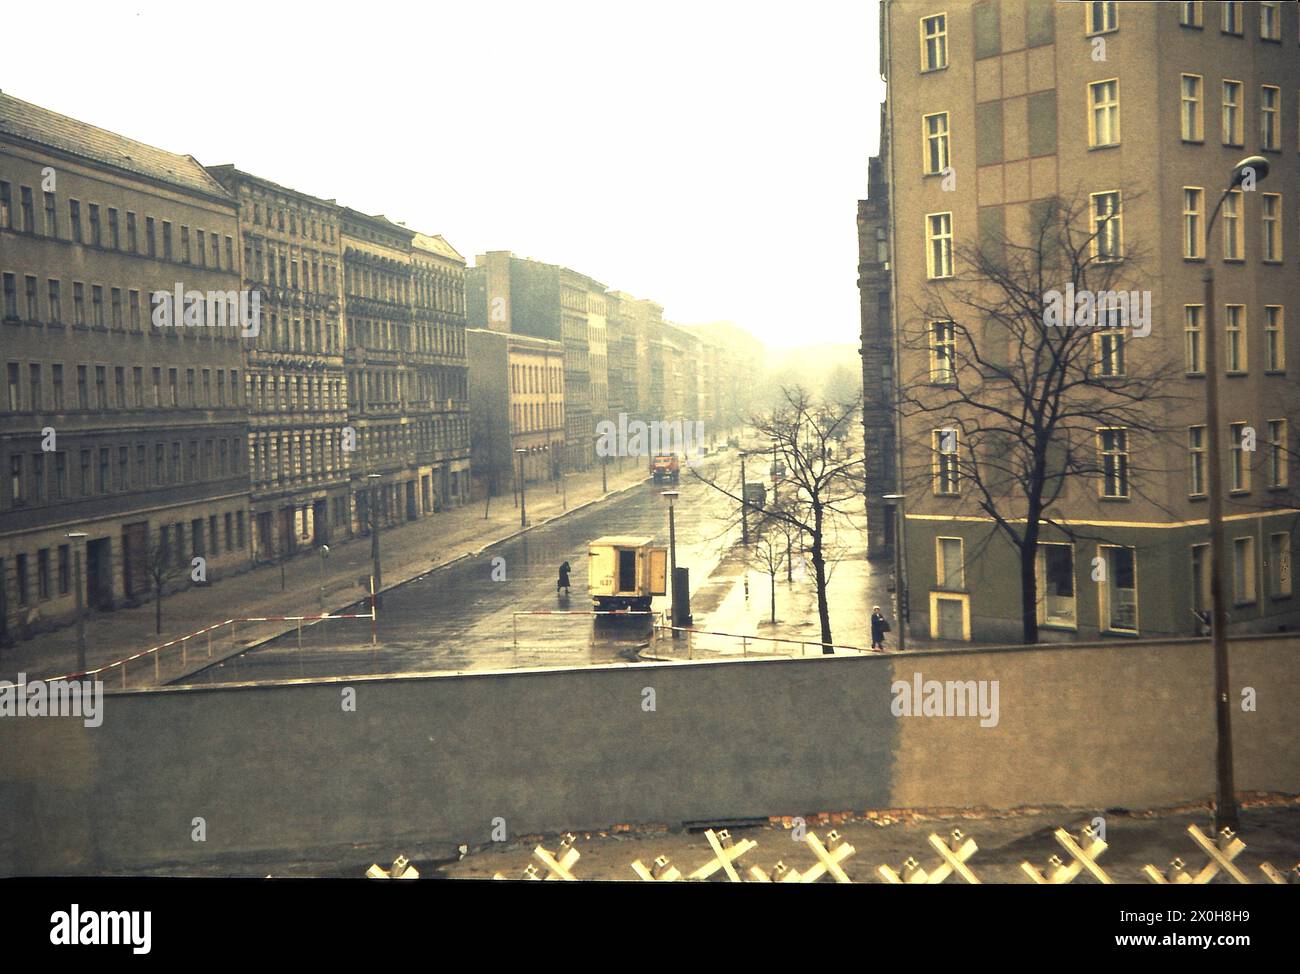 Ein Schulausflug nach Berlin war damals üblich. Für mich war es auch eine Reise in die Gedächtnisspur. Der Blick schweift über einen Bahnsteig in der Bernauerstraße in eine Seitenstraße. Die abgebildete Mauer ist bereits die zweite Mauer, die äußere Mauer, und zeigt Ost-Berlin. Sie können das sehen, weil die Panzerabsperrungen zwischen den beiden Wänden platziert wurden. Herzzerreißende Szenen fanden hier nach dem 13. August 1961 statt. Um Platz für die Grenzbefestigung und den Todesstreifen zu schaffen und Fluchtwege zu verhindern, wurde die gesamte Ost-Berliner Fassade abgerissen. Die Schwefeldämpfe sind spürbar, je weiter man in den Osten blickt Stockfoto